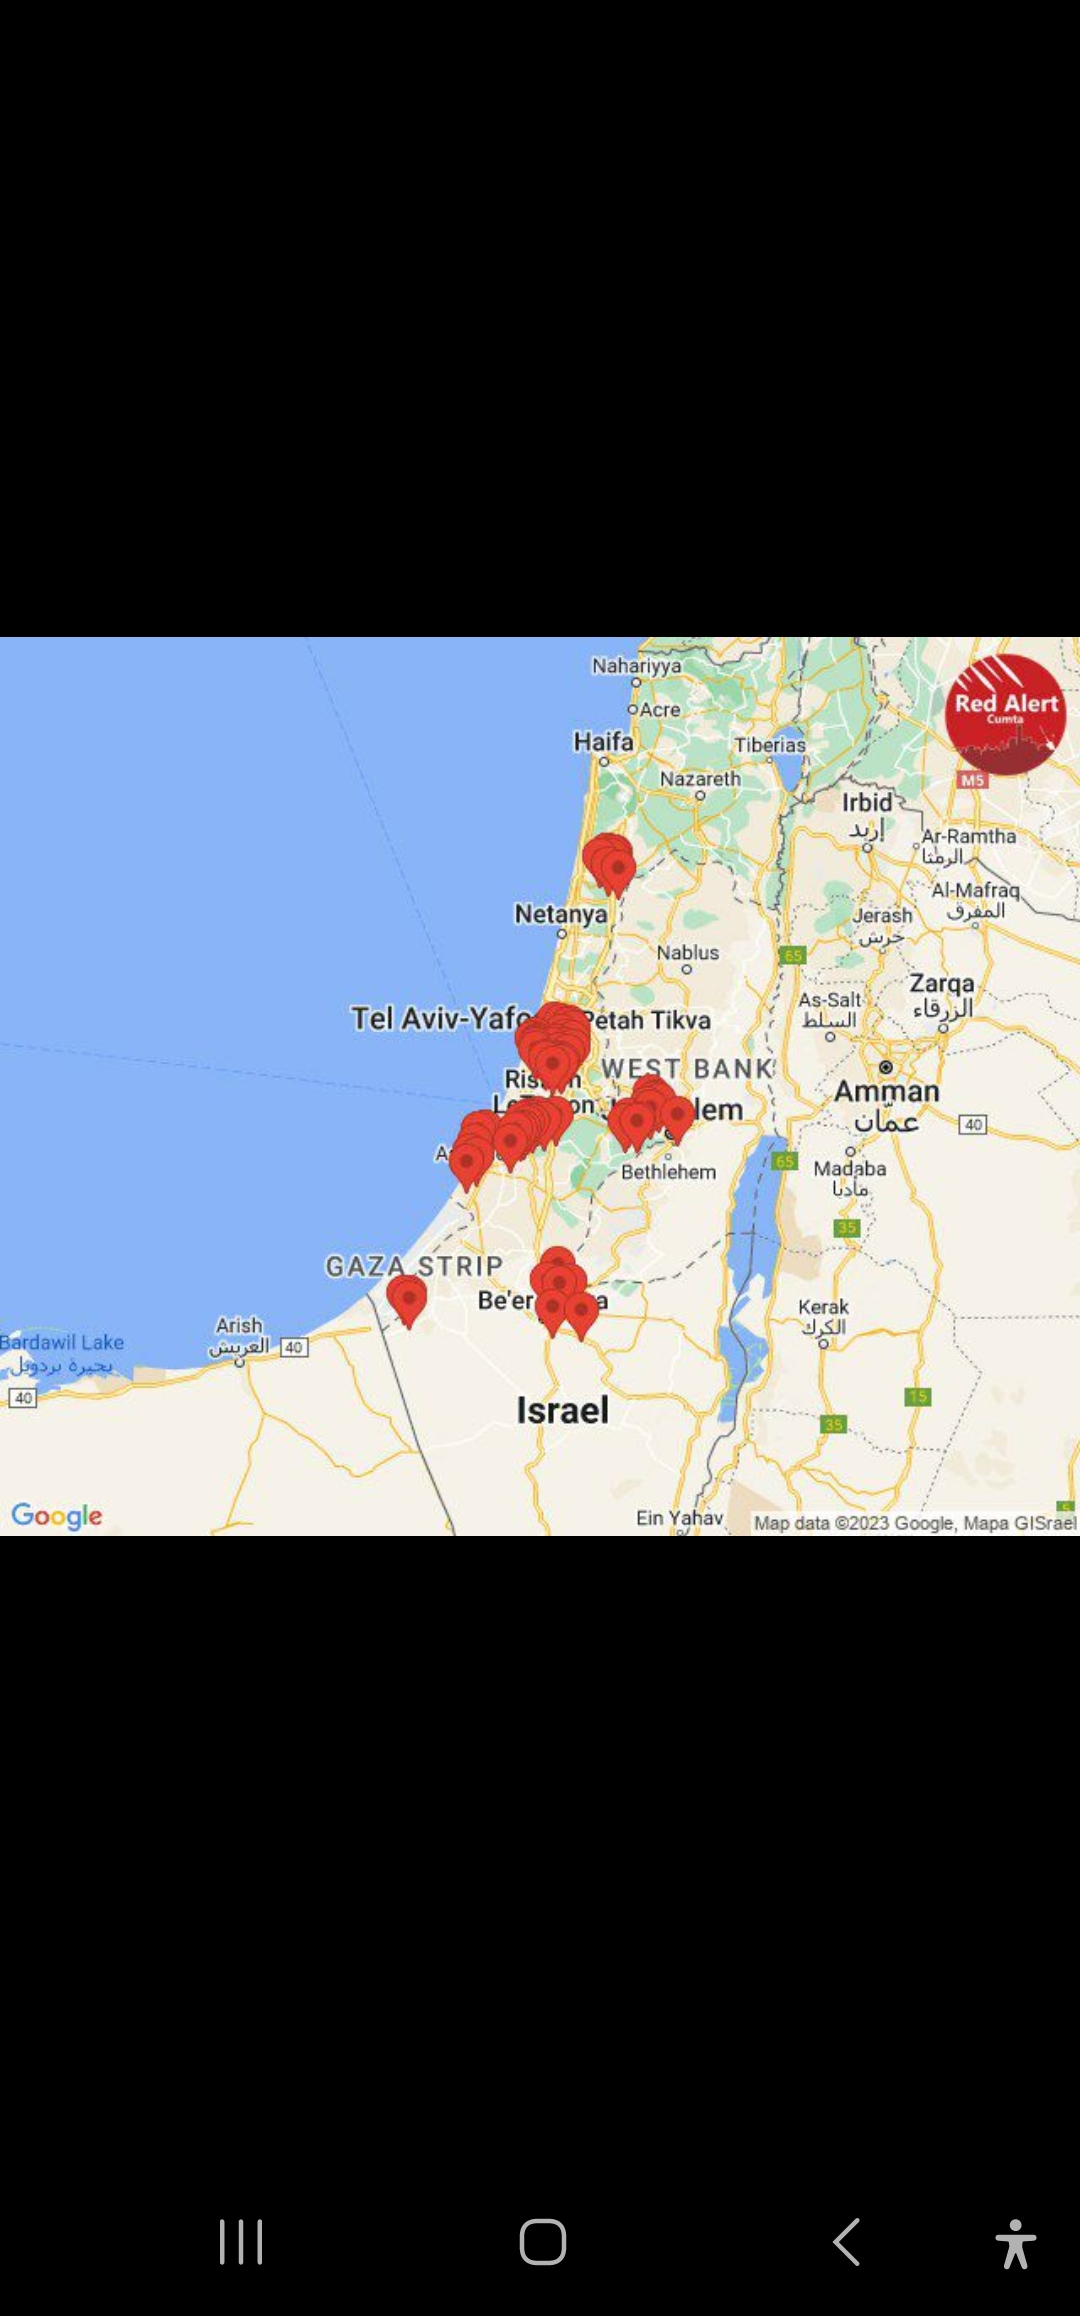 Israel Under Attack